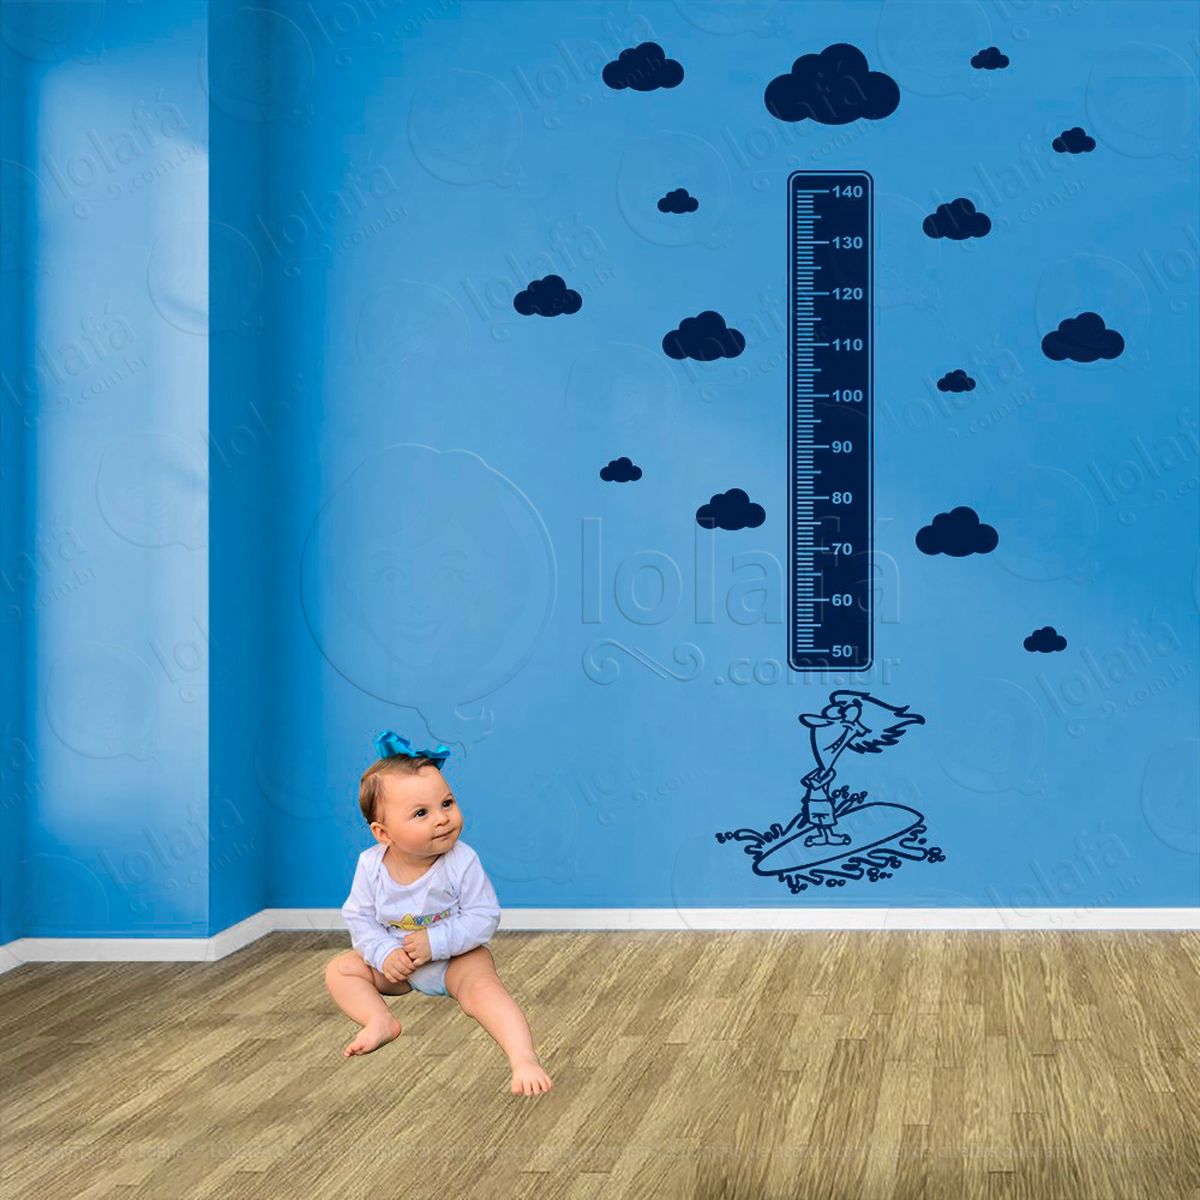 surf e nuvens adesivo régua de crescimento infantil, medidor de altura para quarto, porta e parede - mod:419